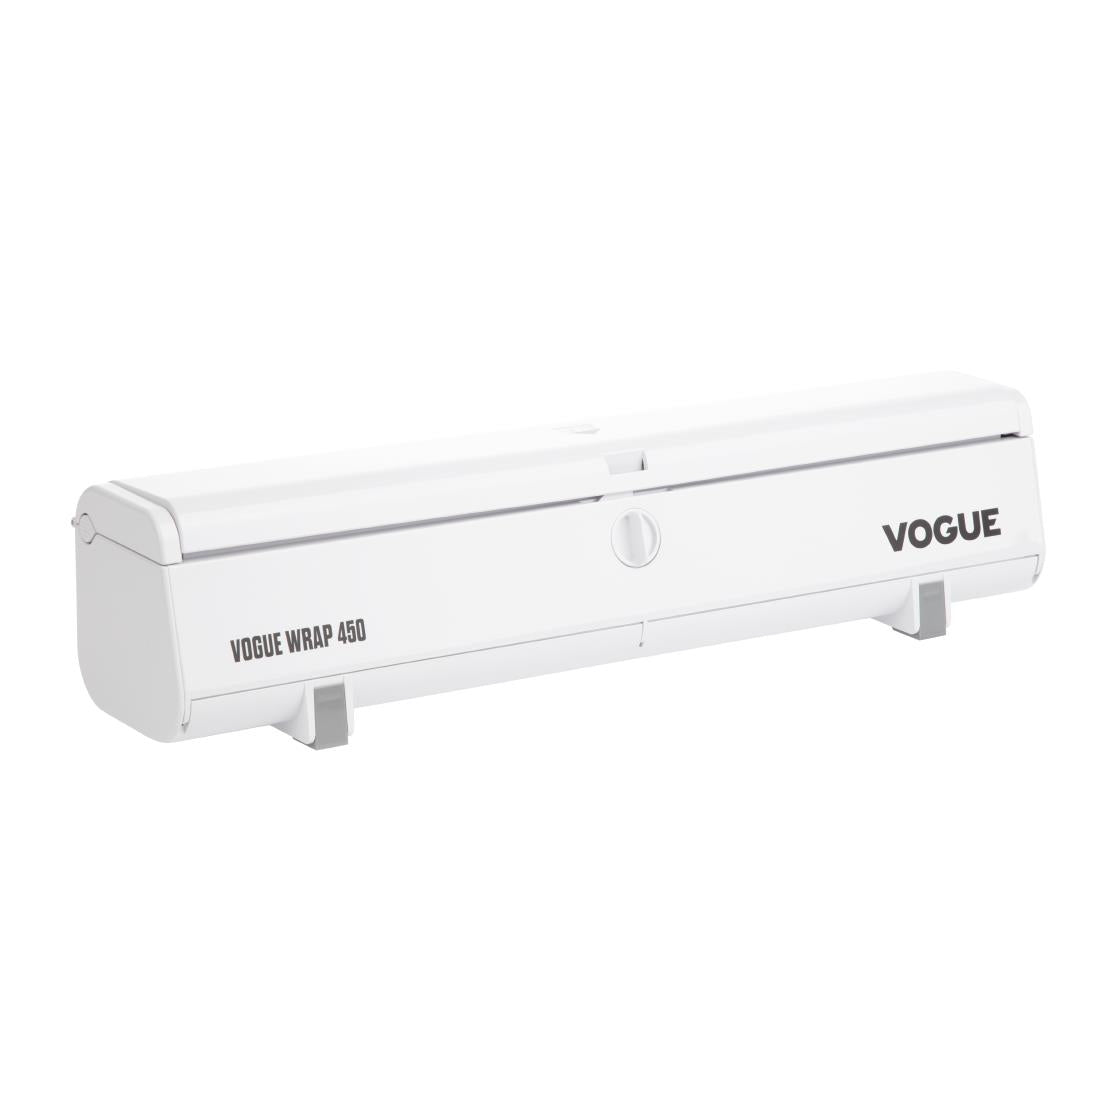 SA779 Vogue Wrap 450 Parchment Dispenser Bundle